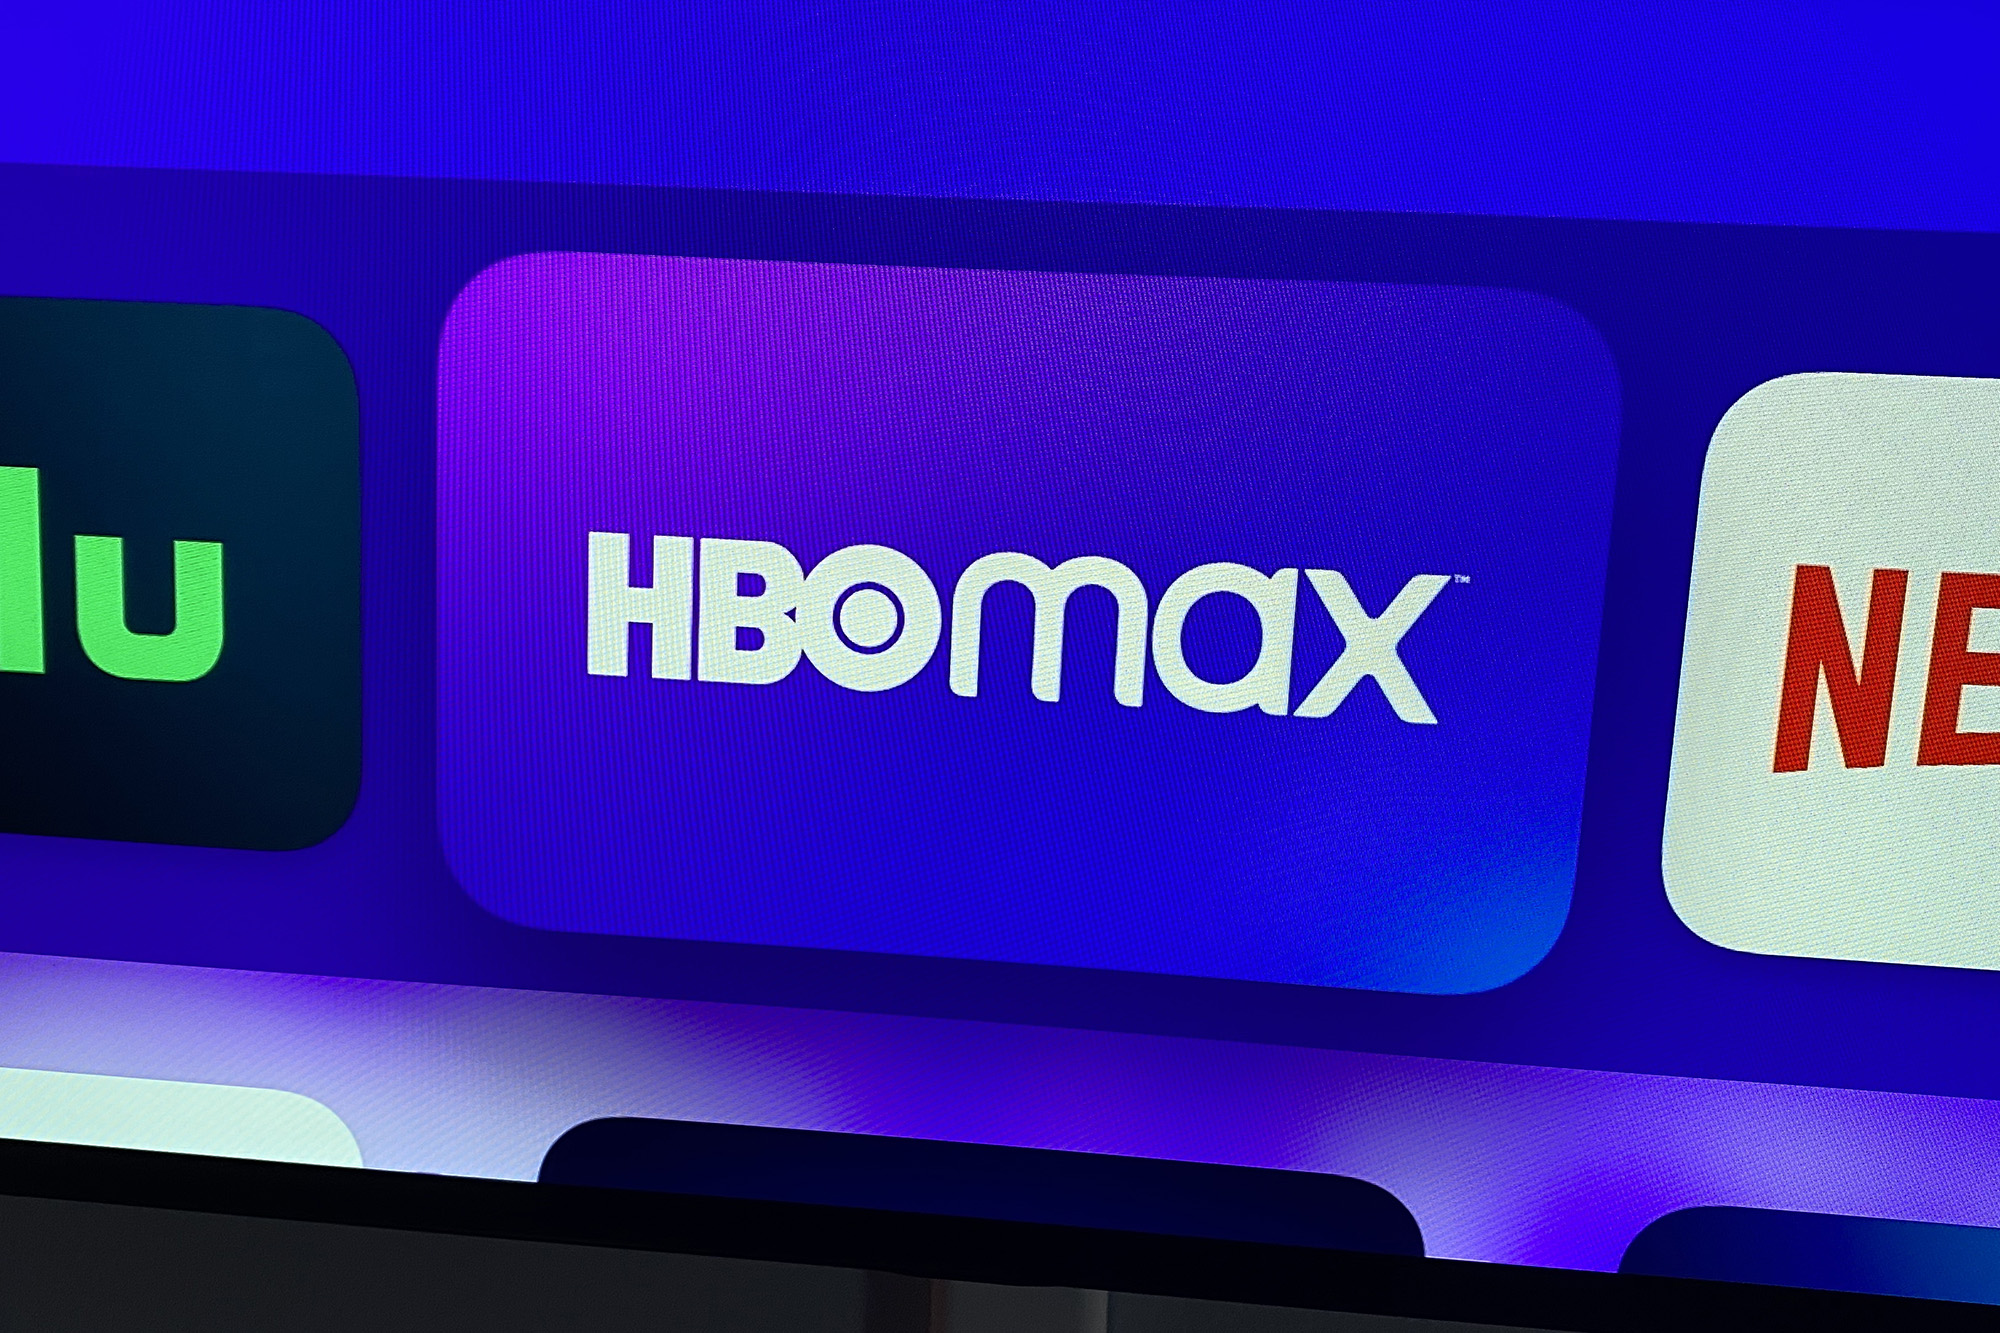 HBO Max chega a Portugal em 2021, ano em que a Warner Bros pode